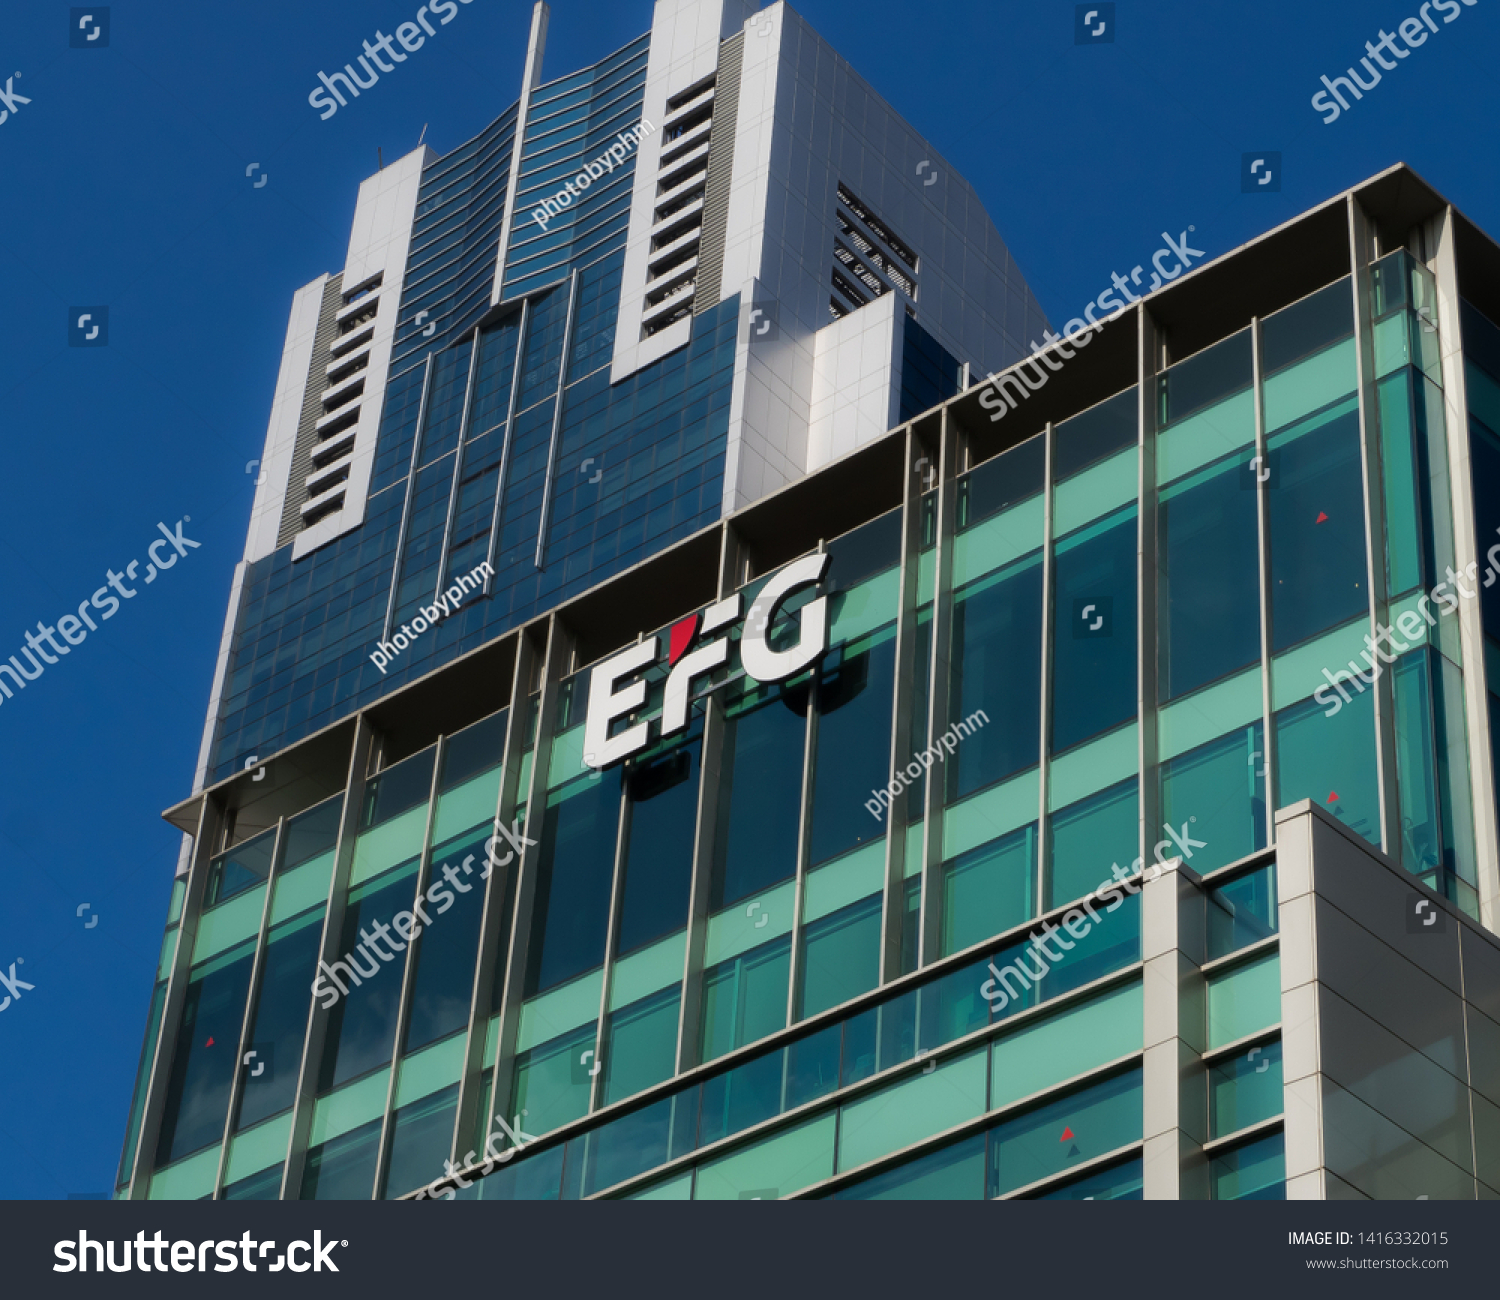 January 31 2018 Singapore Efg Bank Stock Photo Edit Now 1416332015